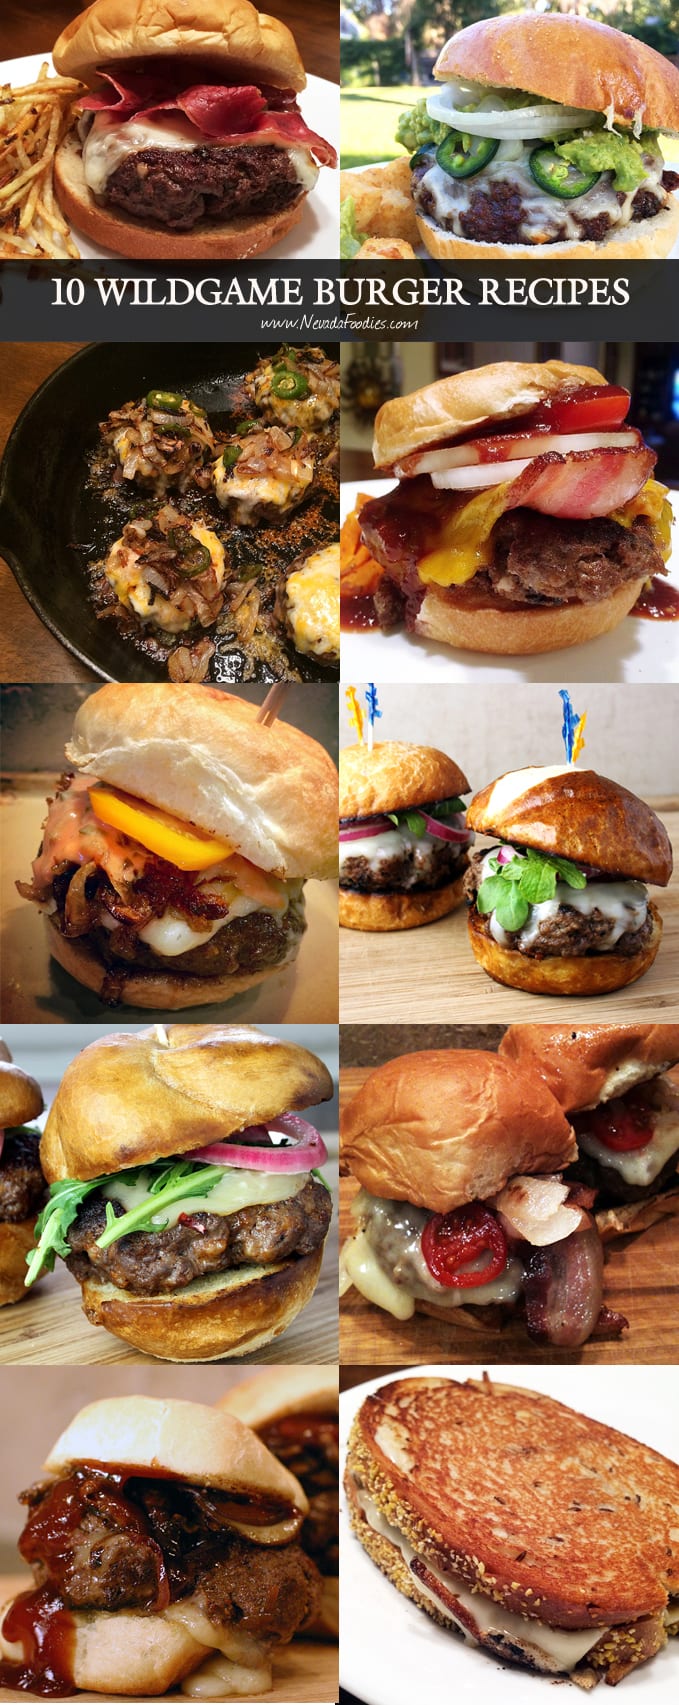 10 Wildgame Burger Recipes